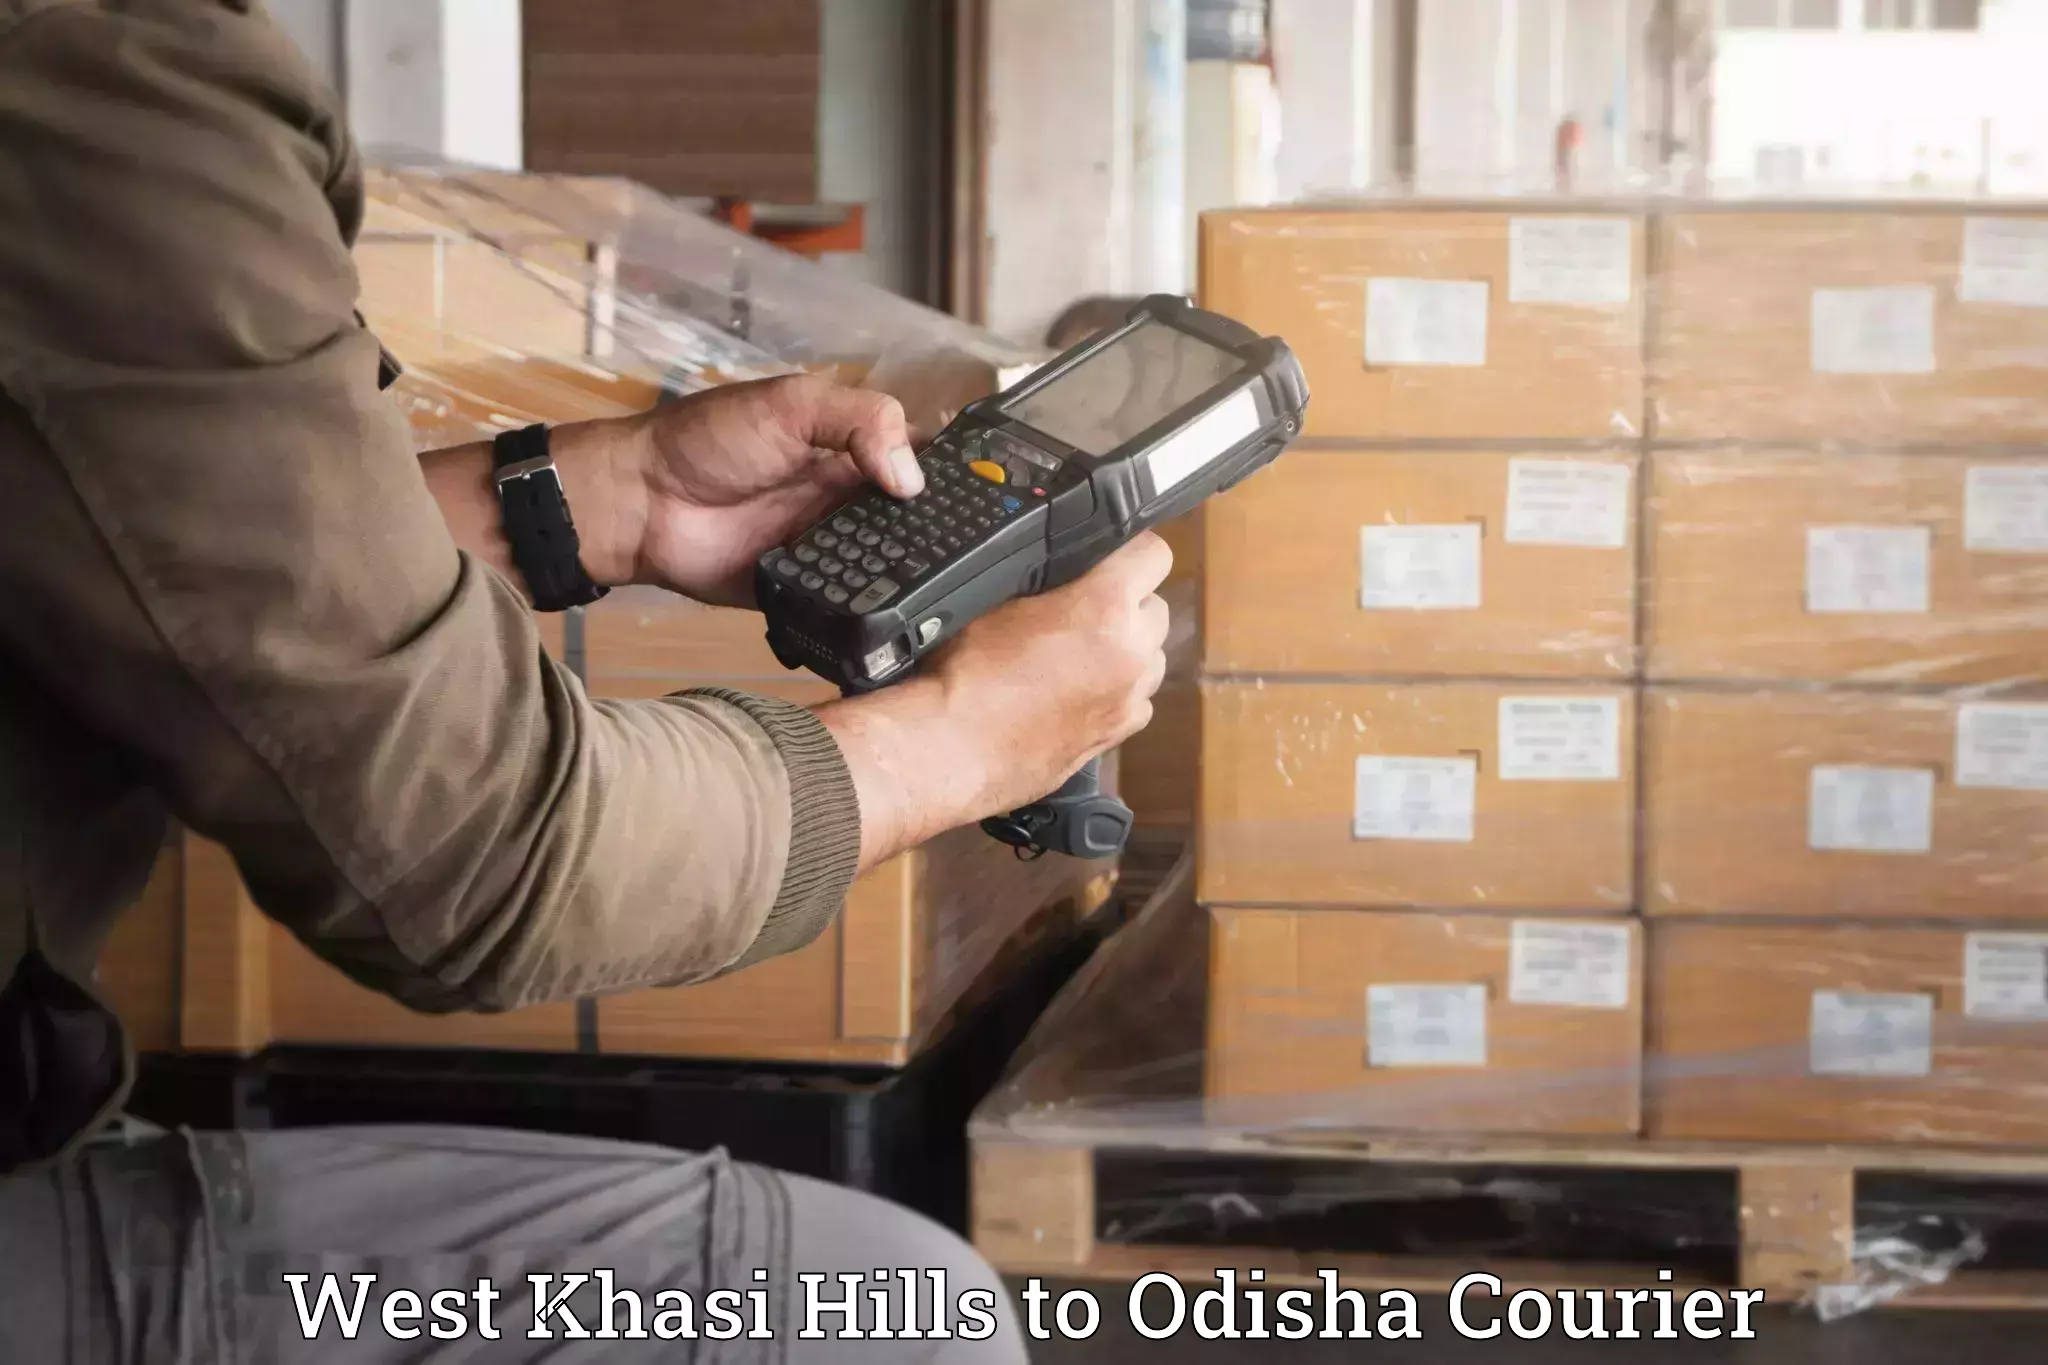 Professional moving company West Khasi Hills to Kalahandi